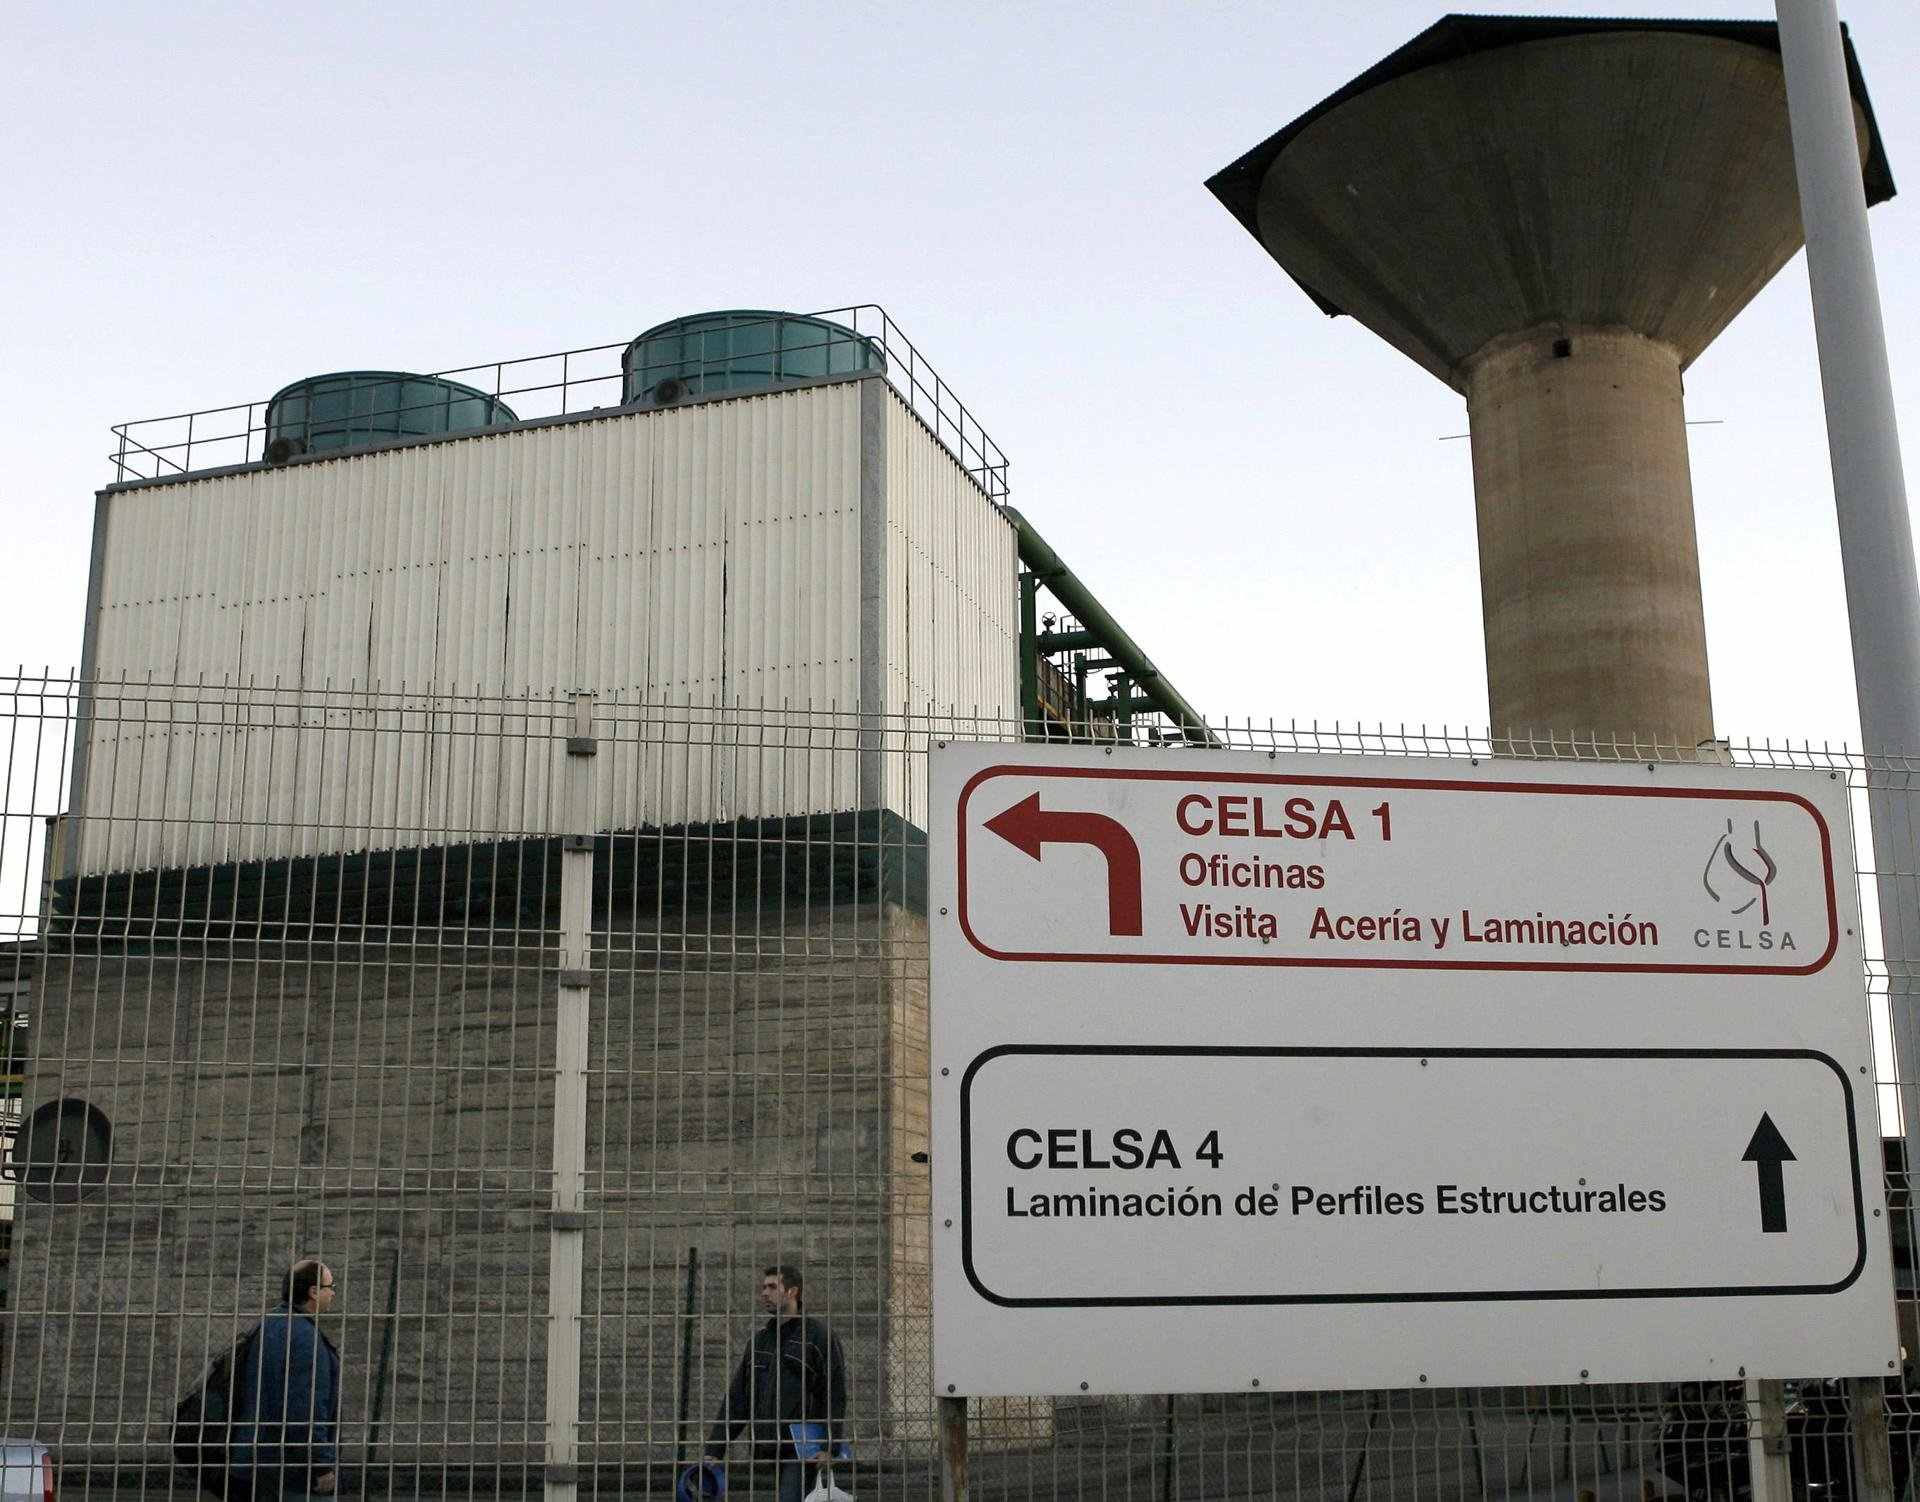 Els fons creditors de Celsa esperen controlar l'empresa al novembre amb un consell interí